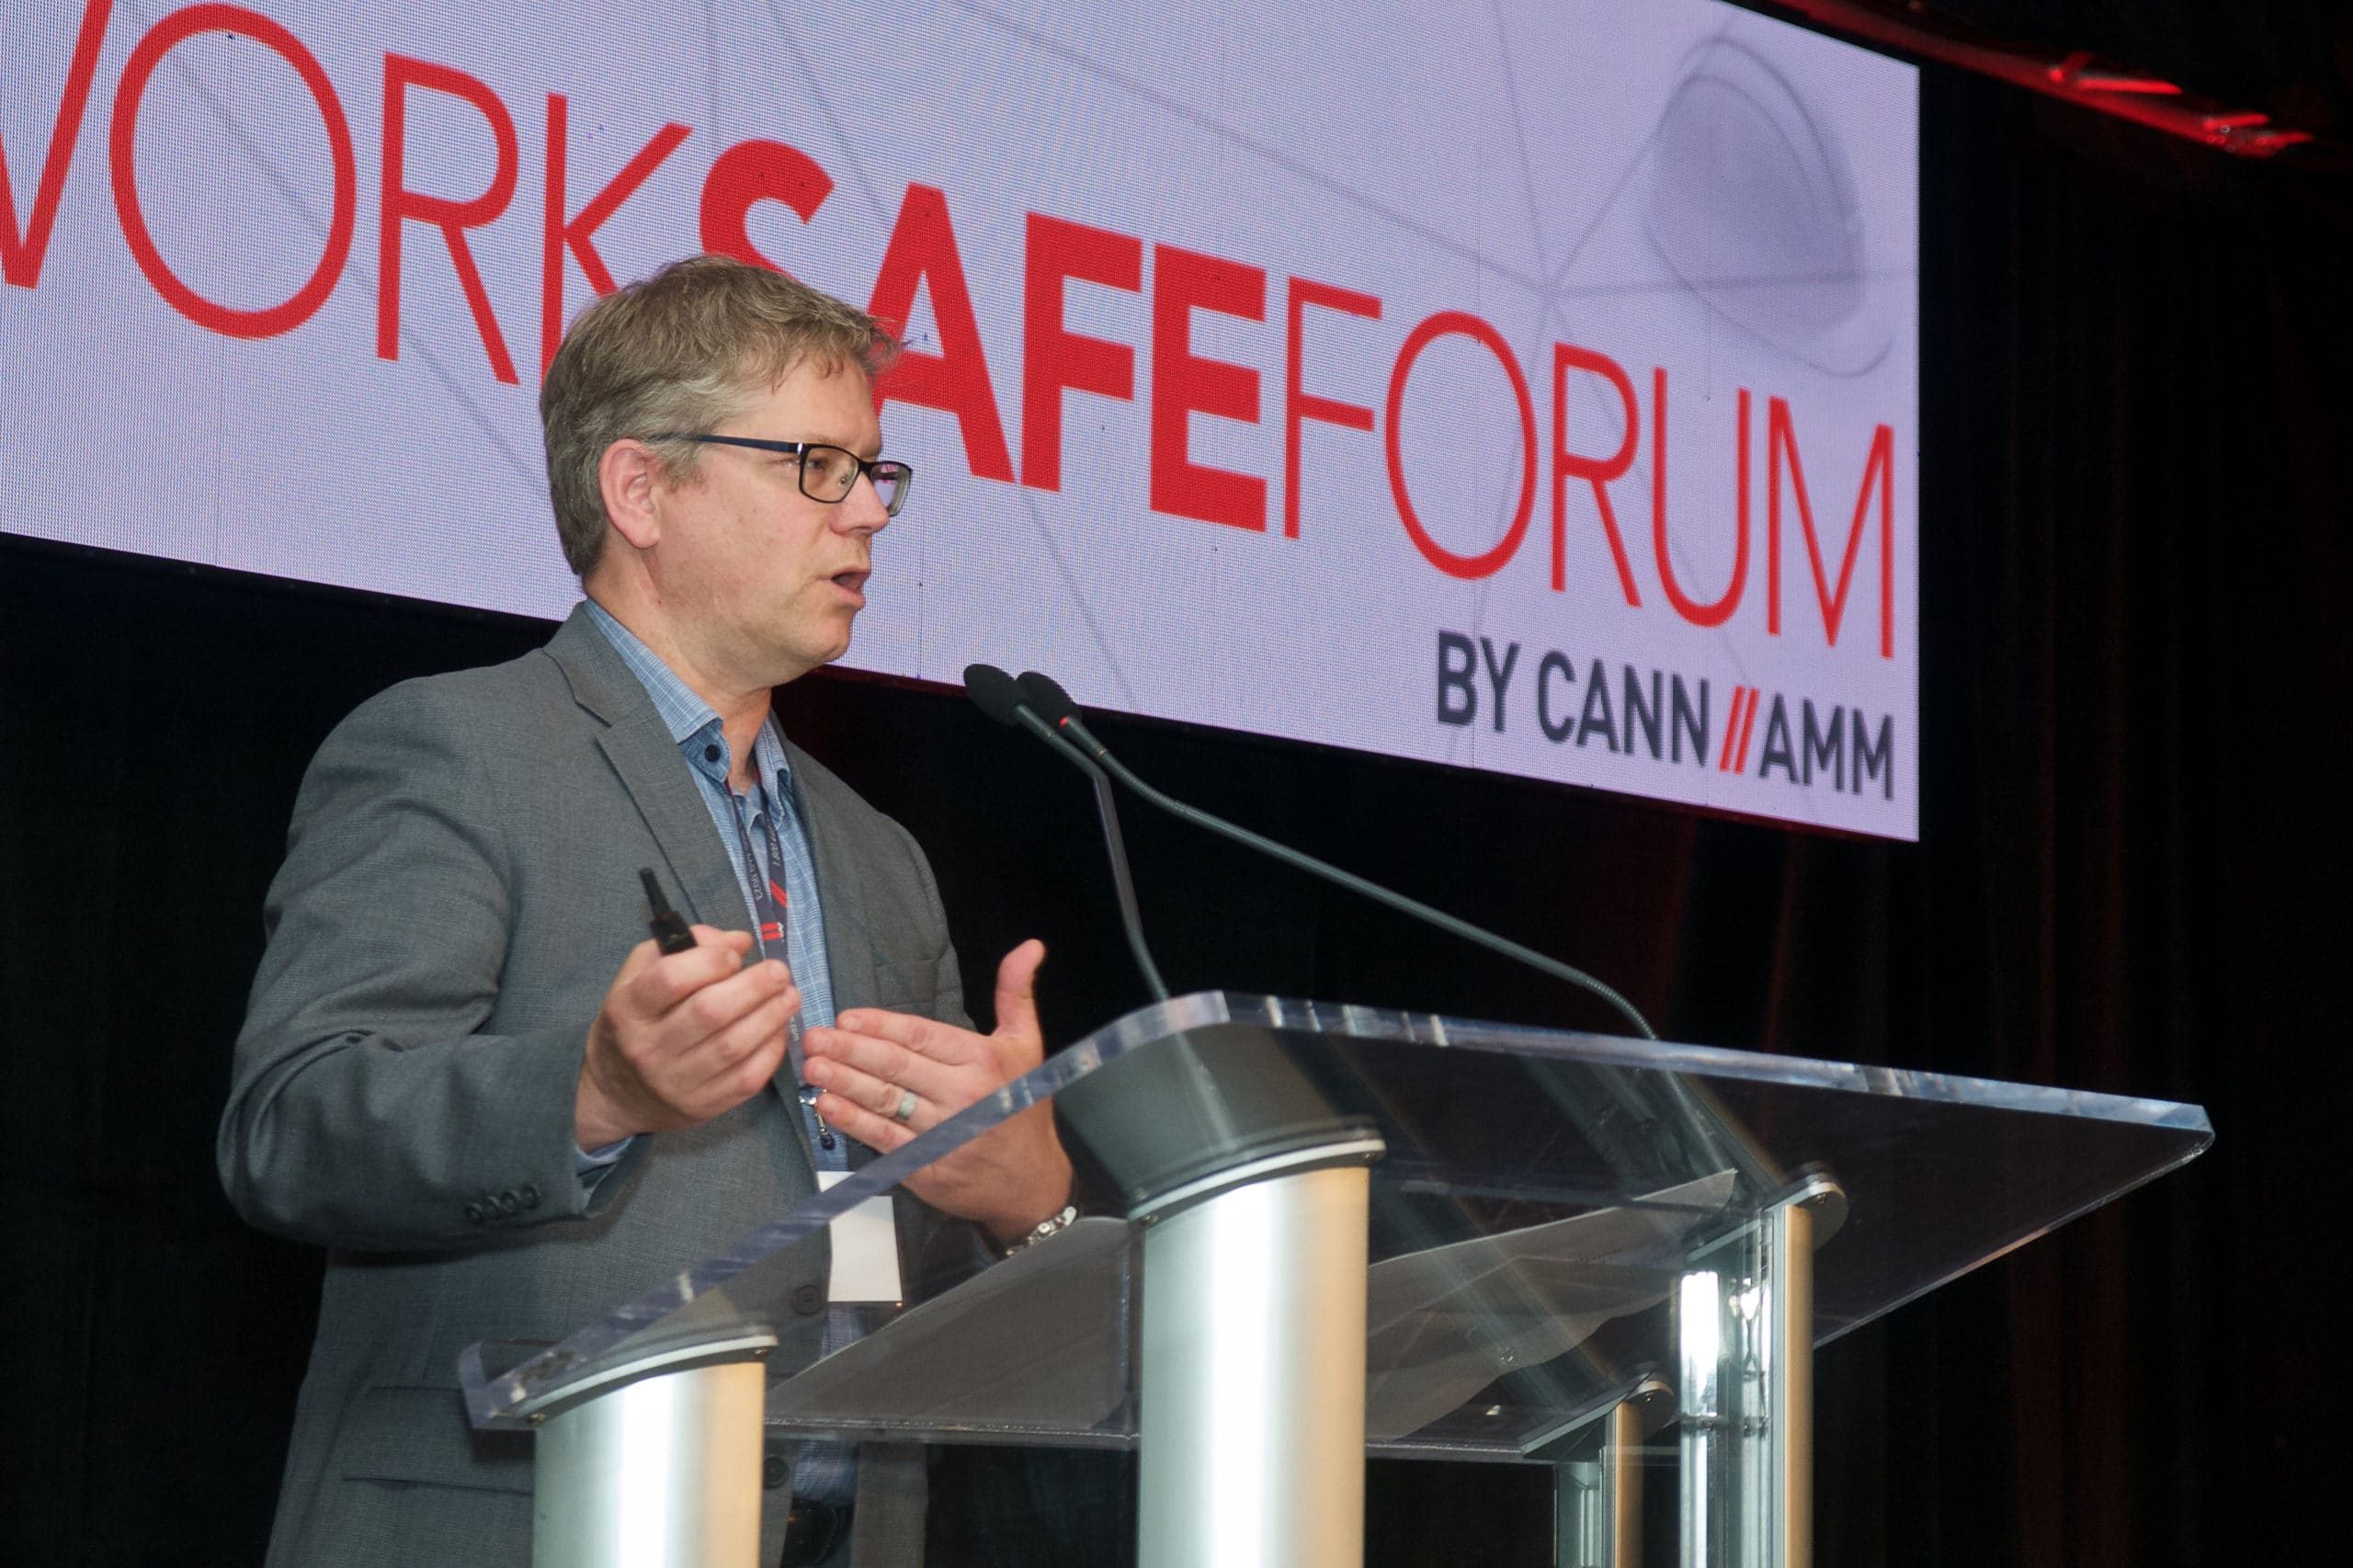 CannAmm WorkSafe Forum